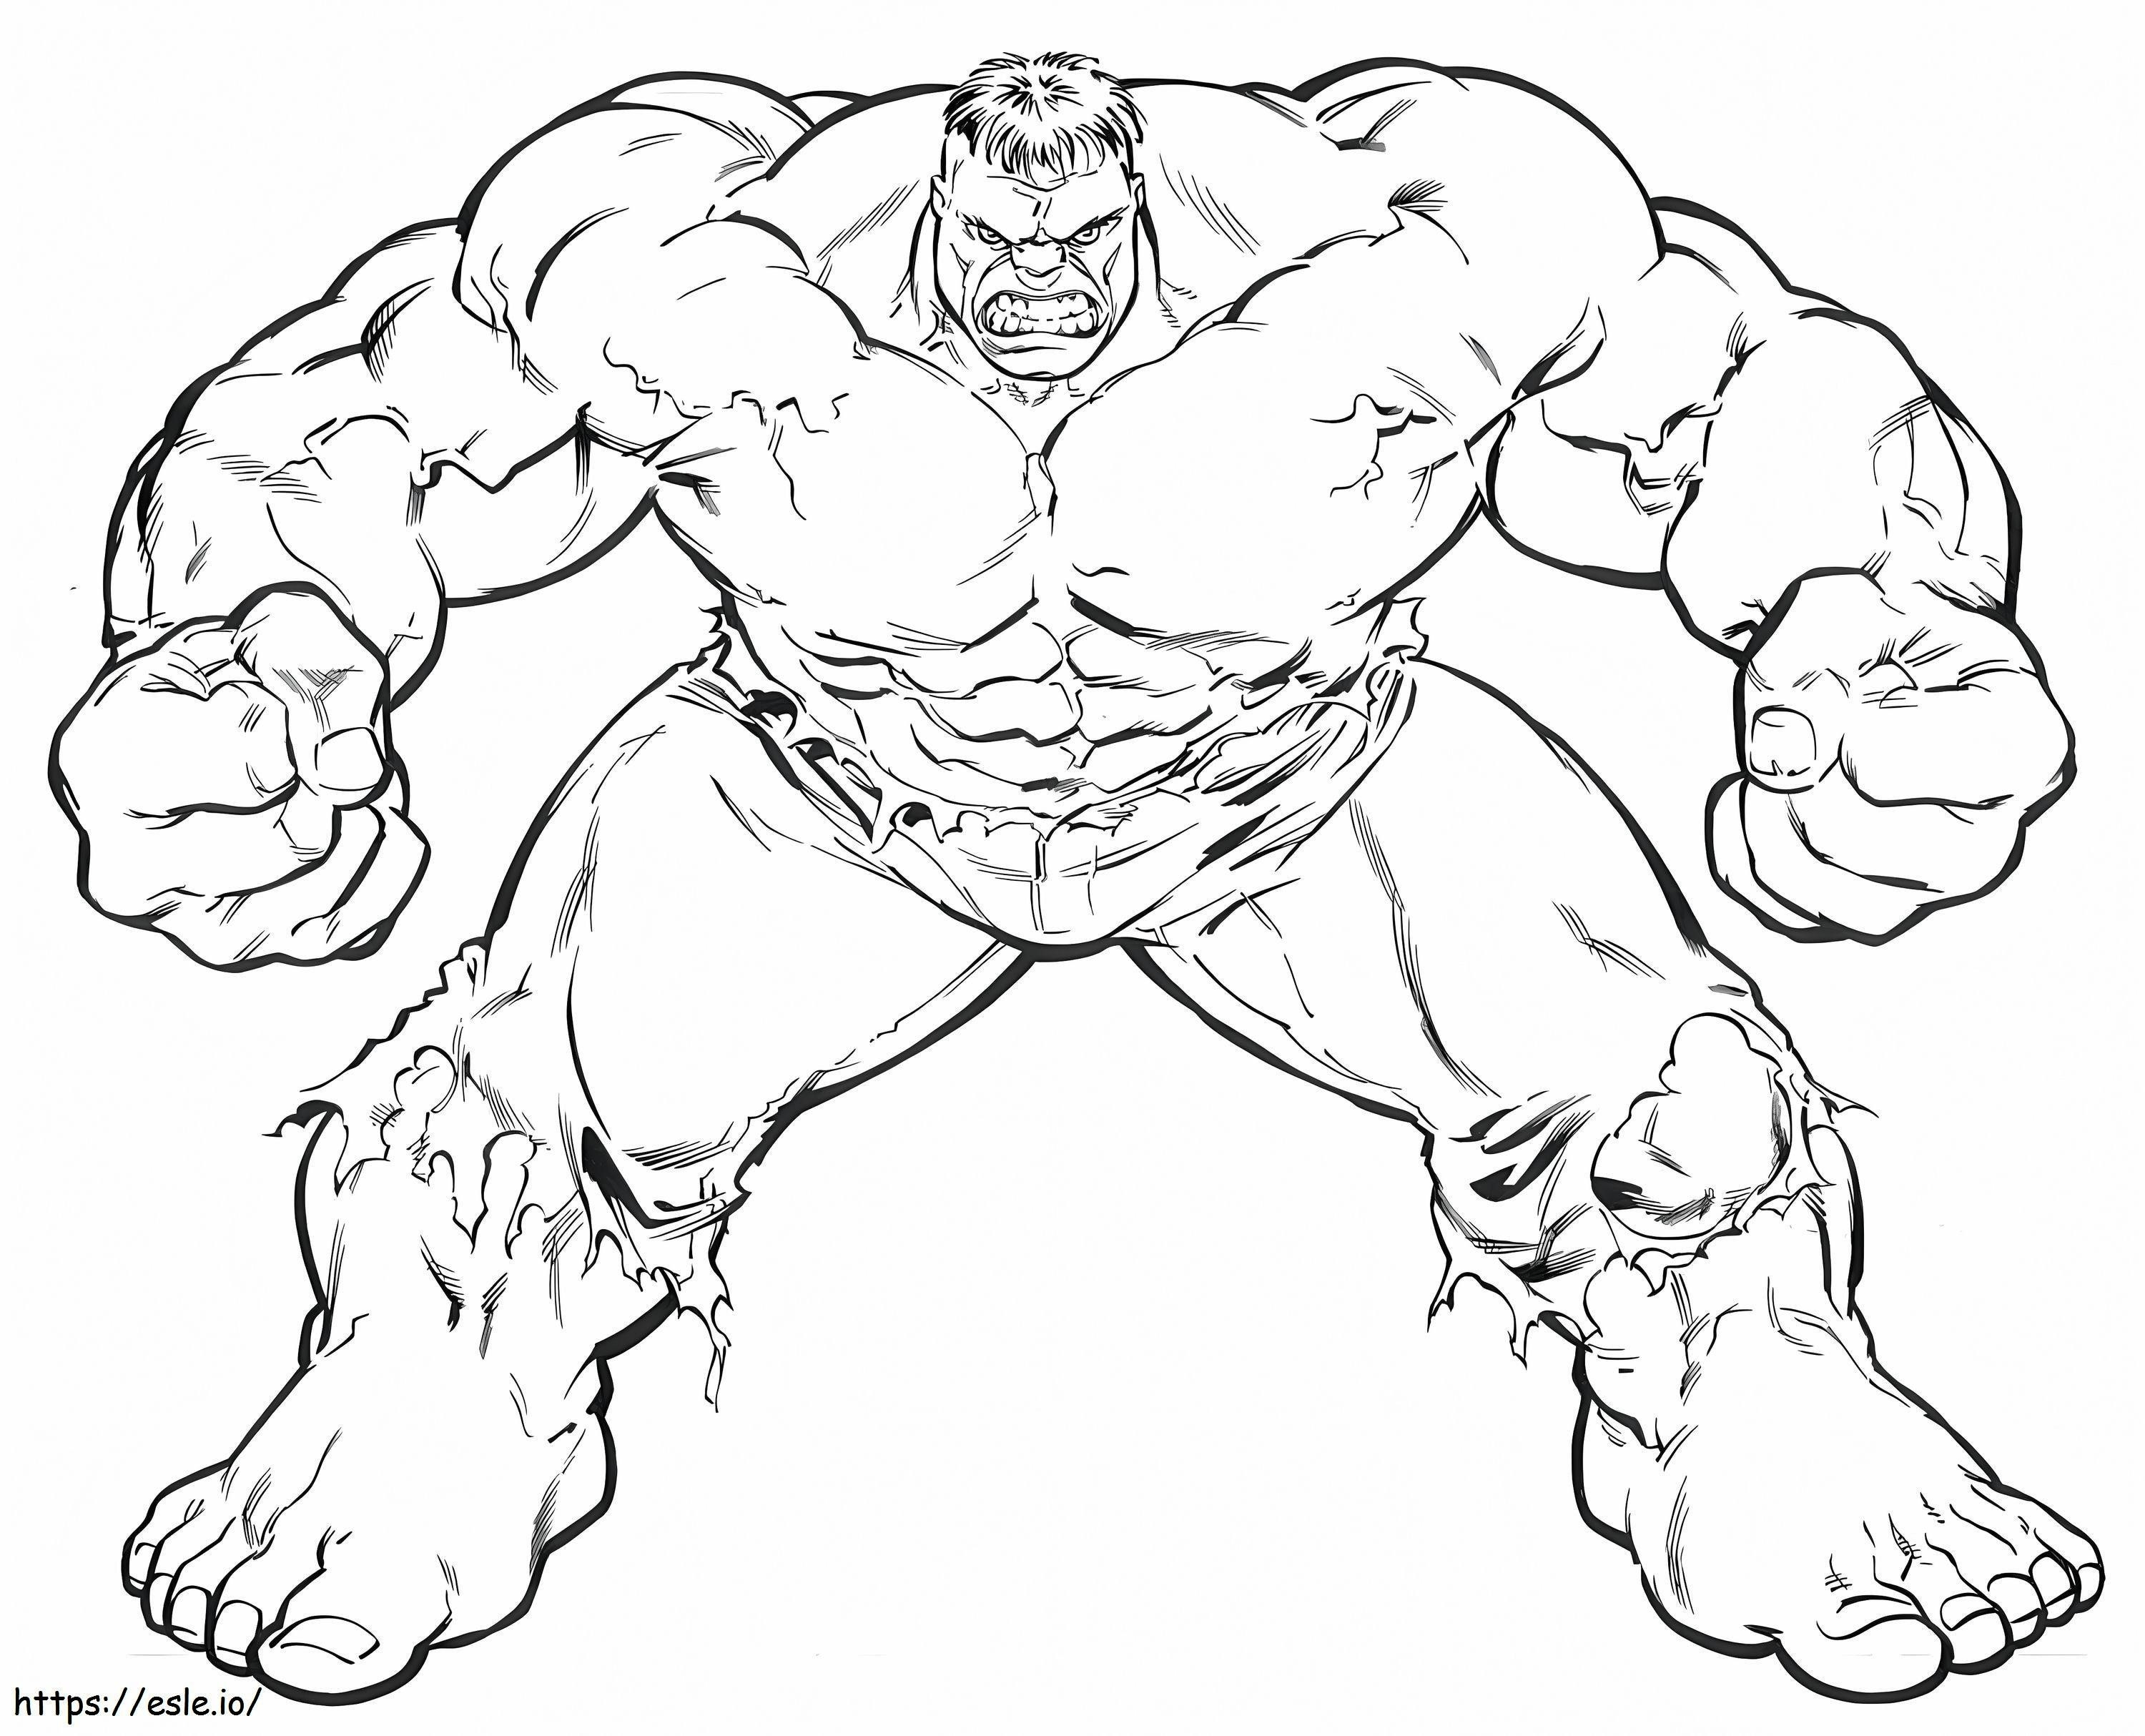 Starker Hulk ausmalbilder